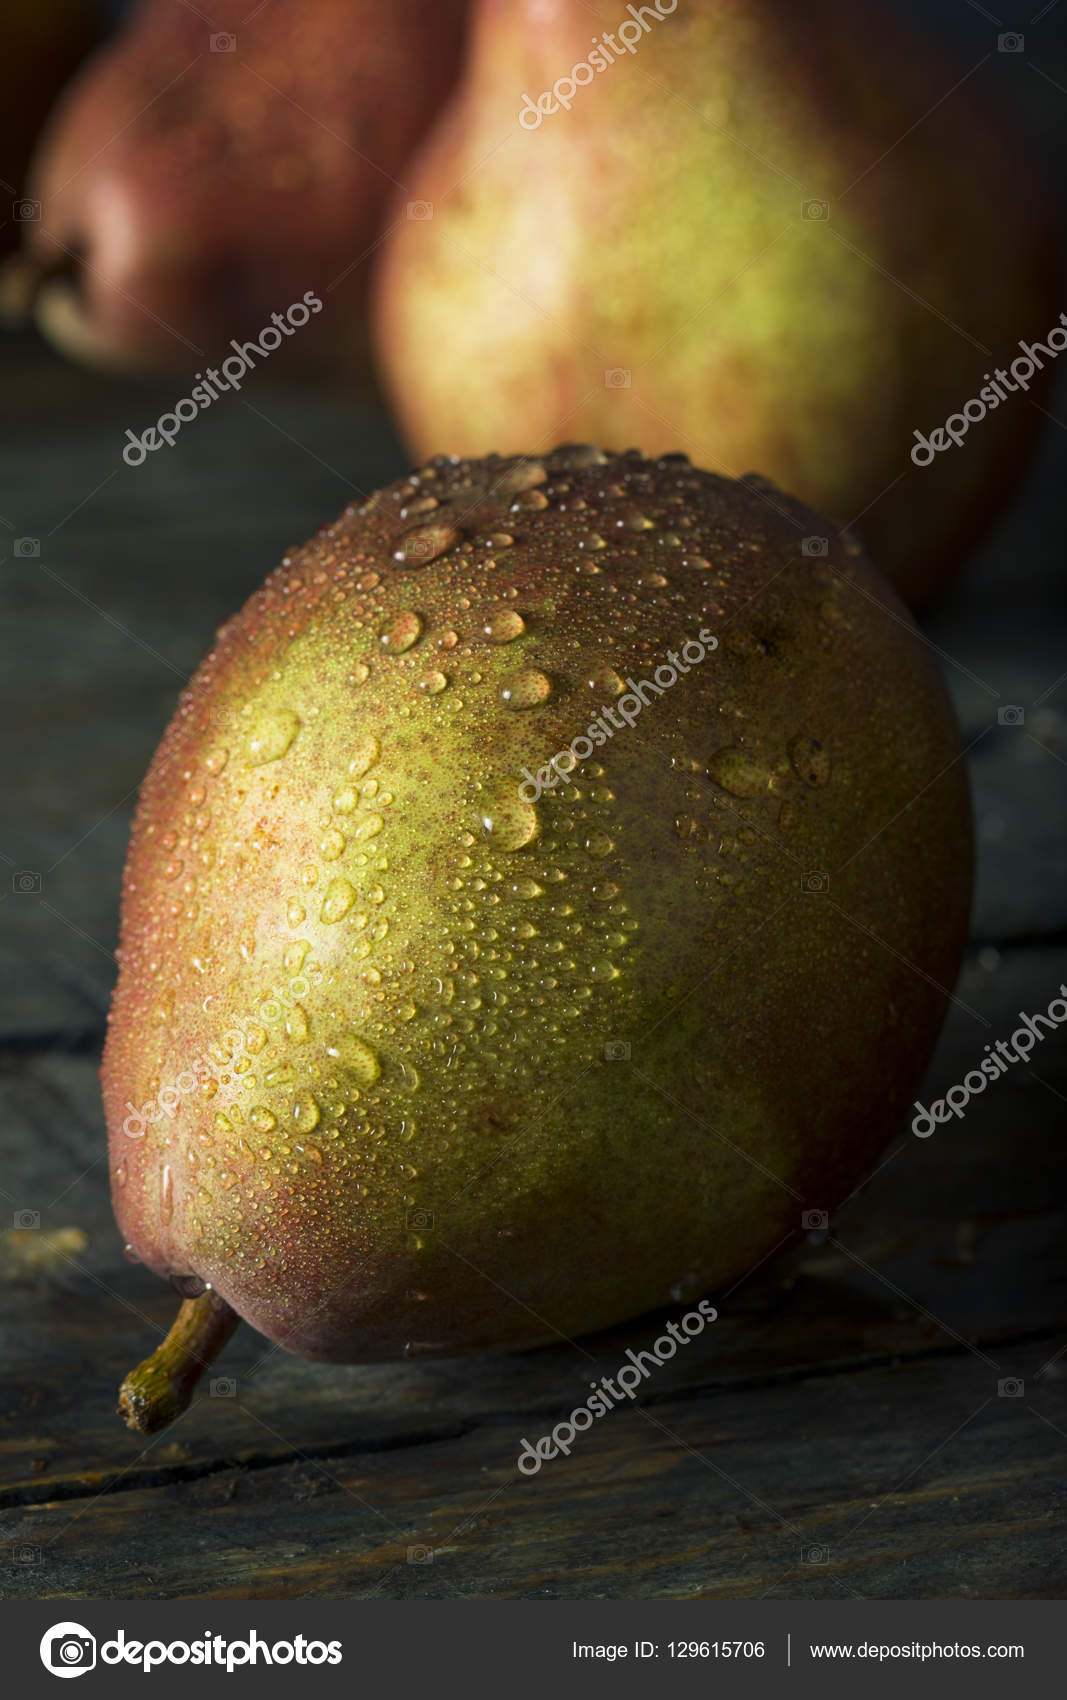 Fresh Pears, Anjou Organic